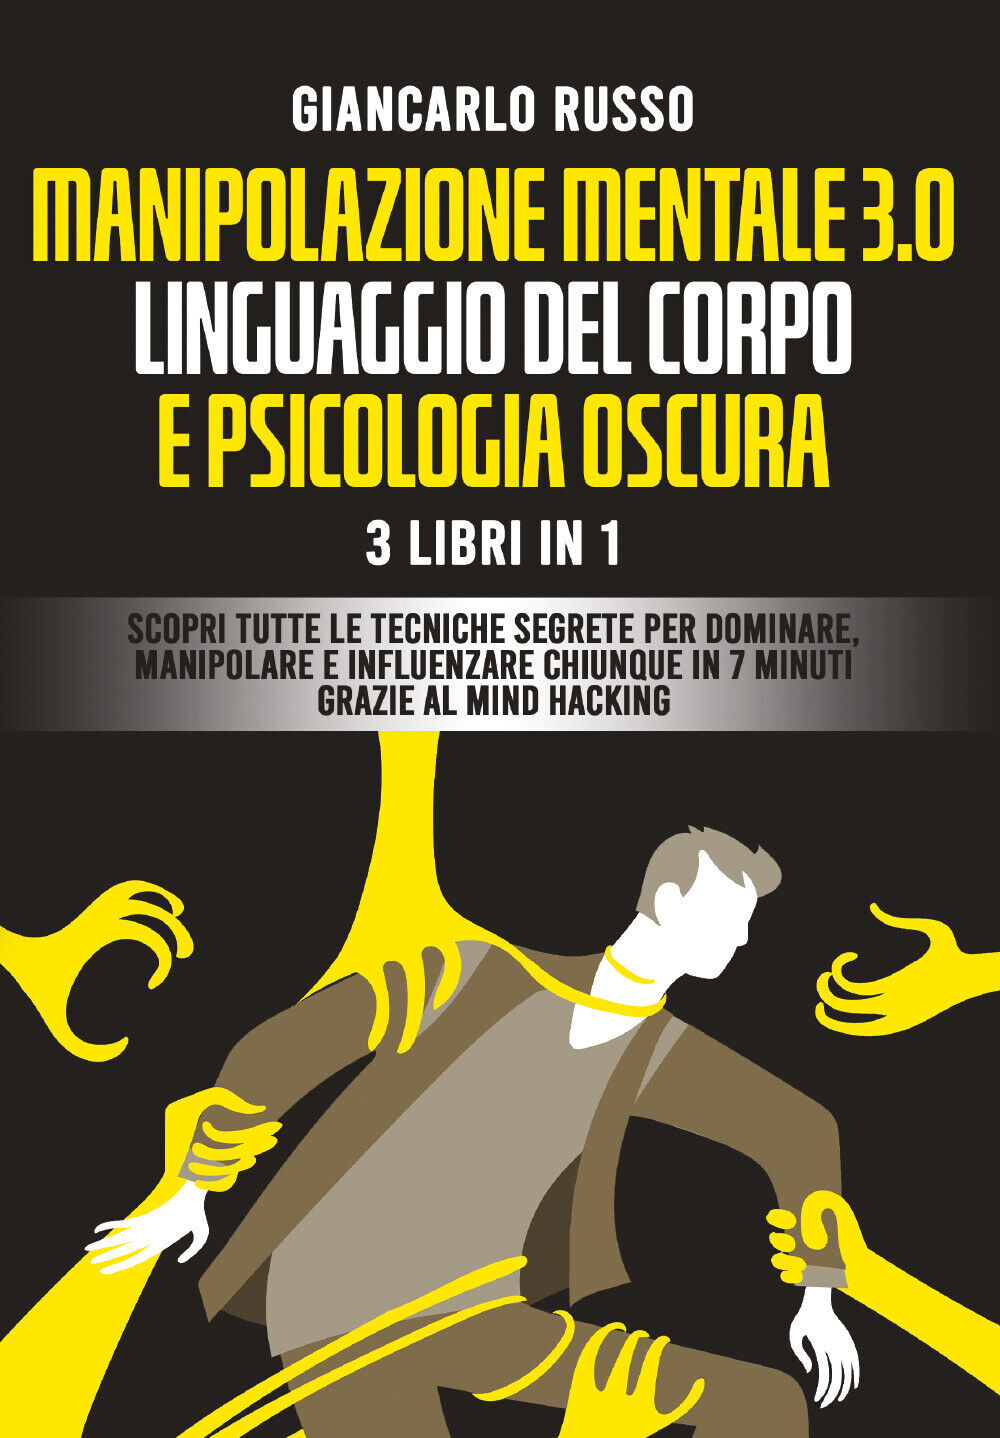 Manipolazione mentale 3.0, linguaggio del corpo e psicologia oscura. 3 Libri in 